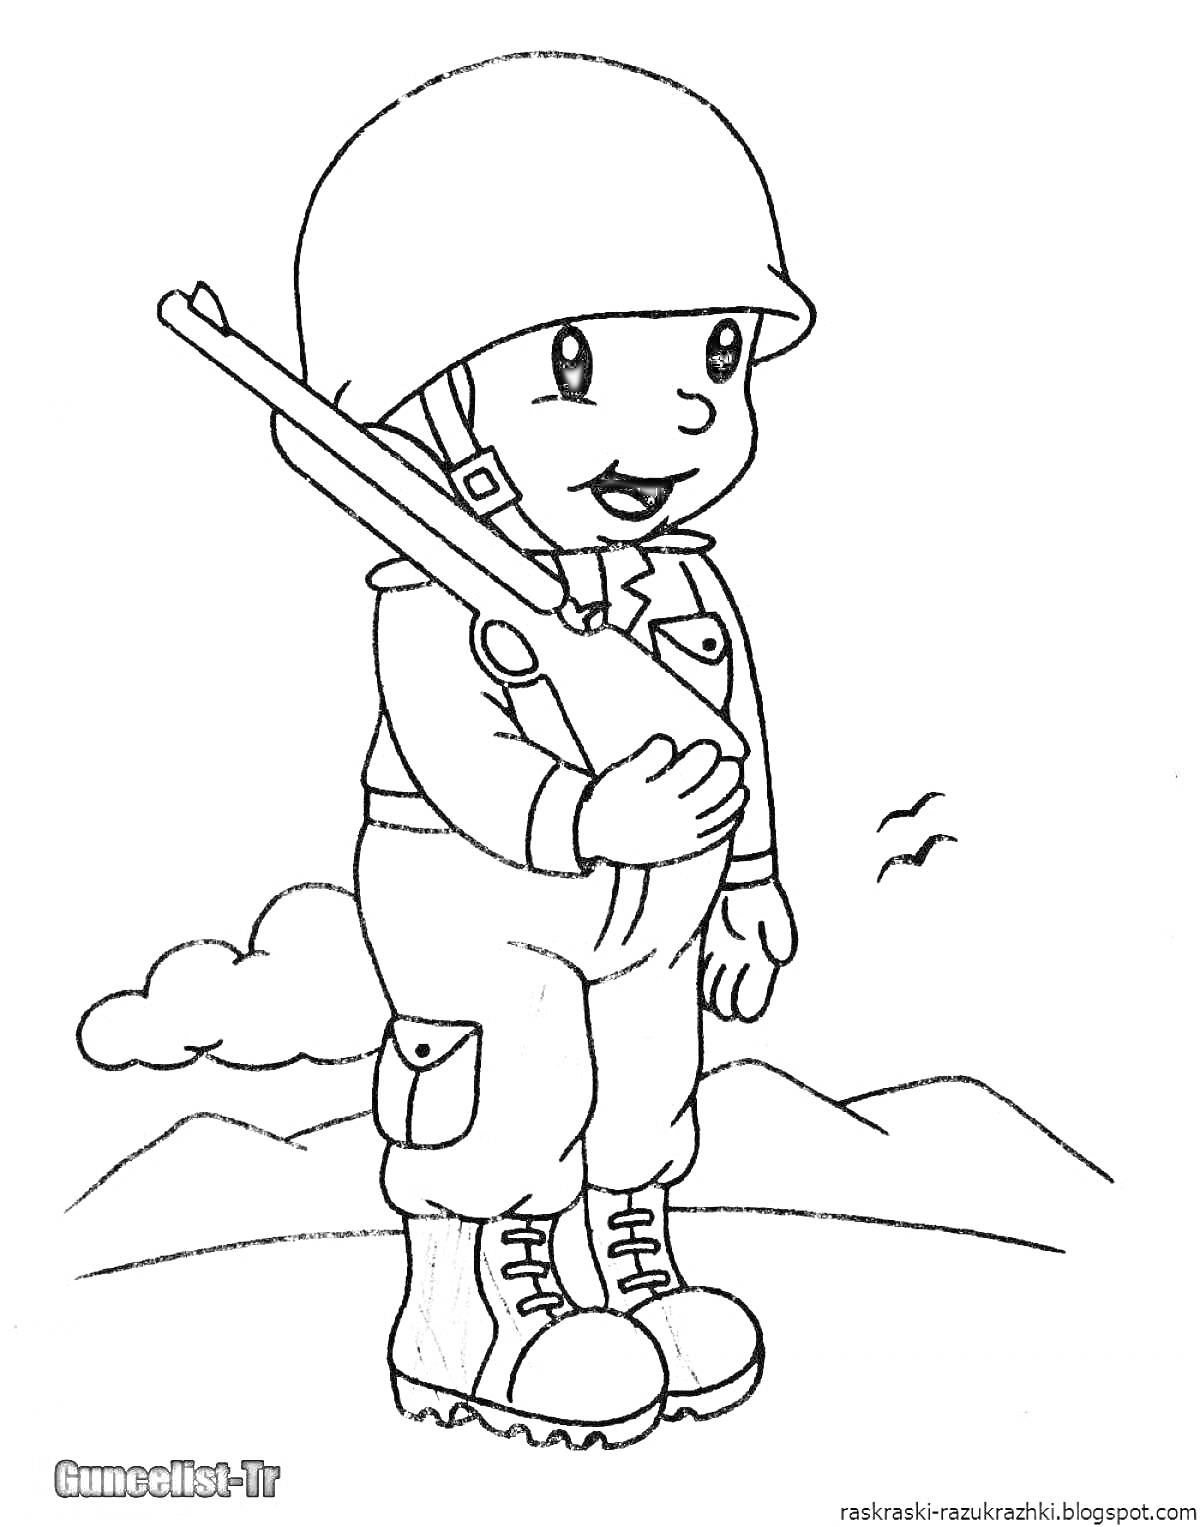 Раскраска Солдат с винтовкой на фоне гор и птиц